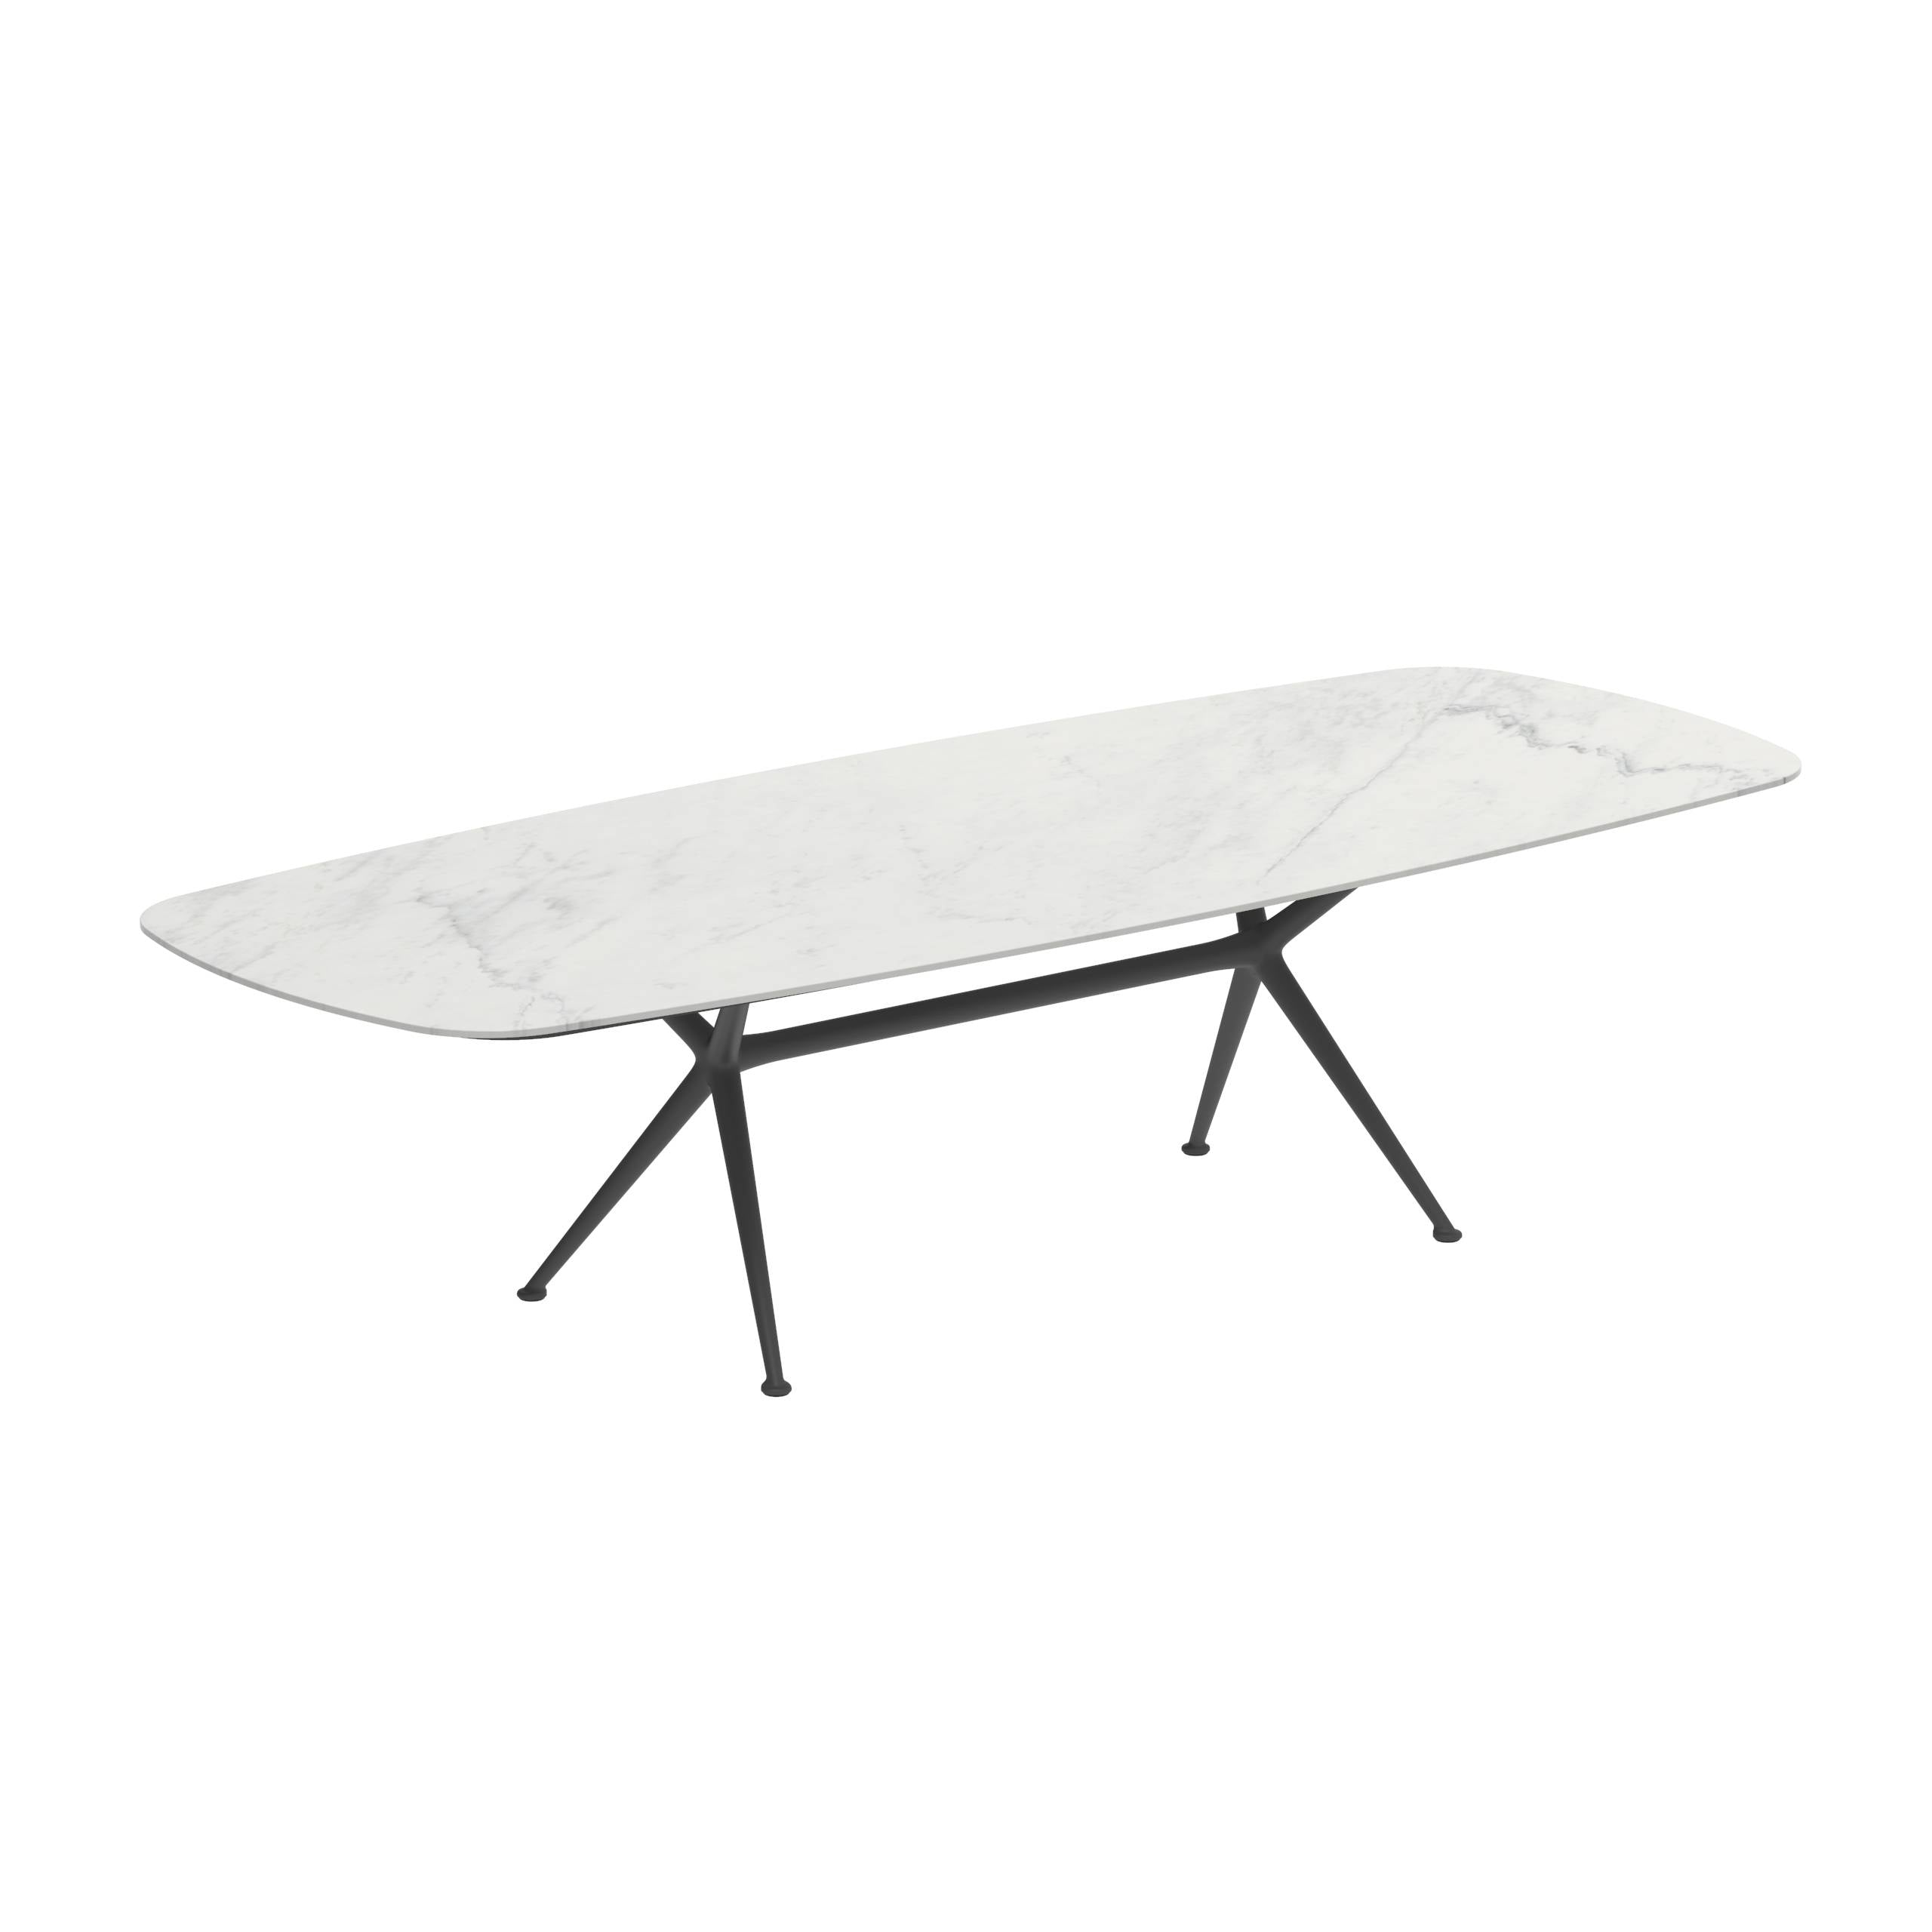 Exes Table 300x120cm Alu Legs Anthracite - Table Top Ceramic Bianco Statuario